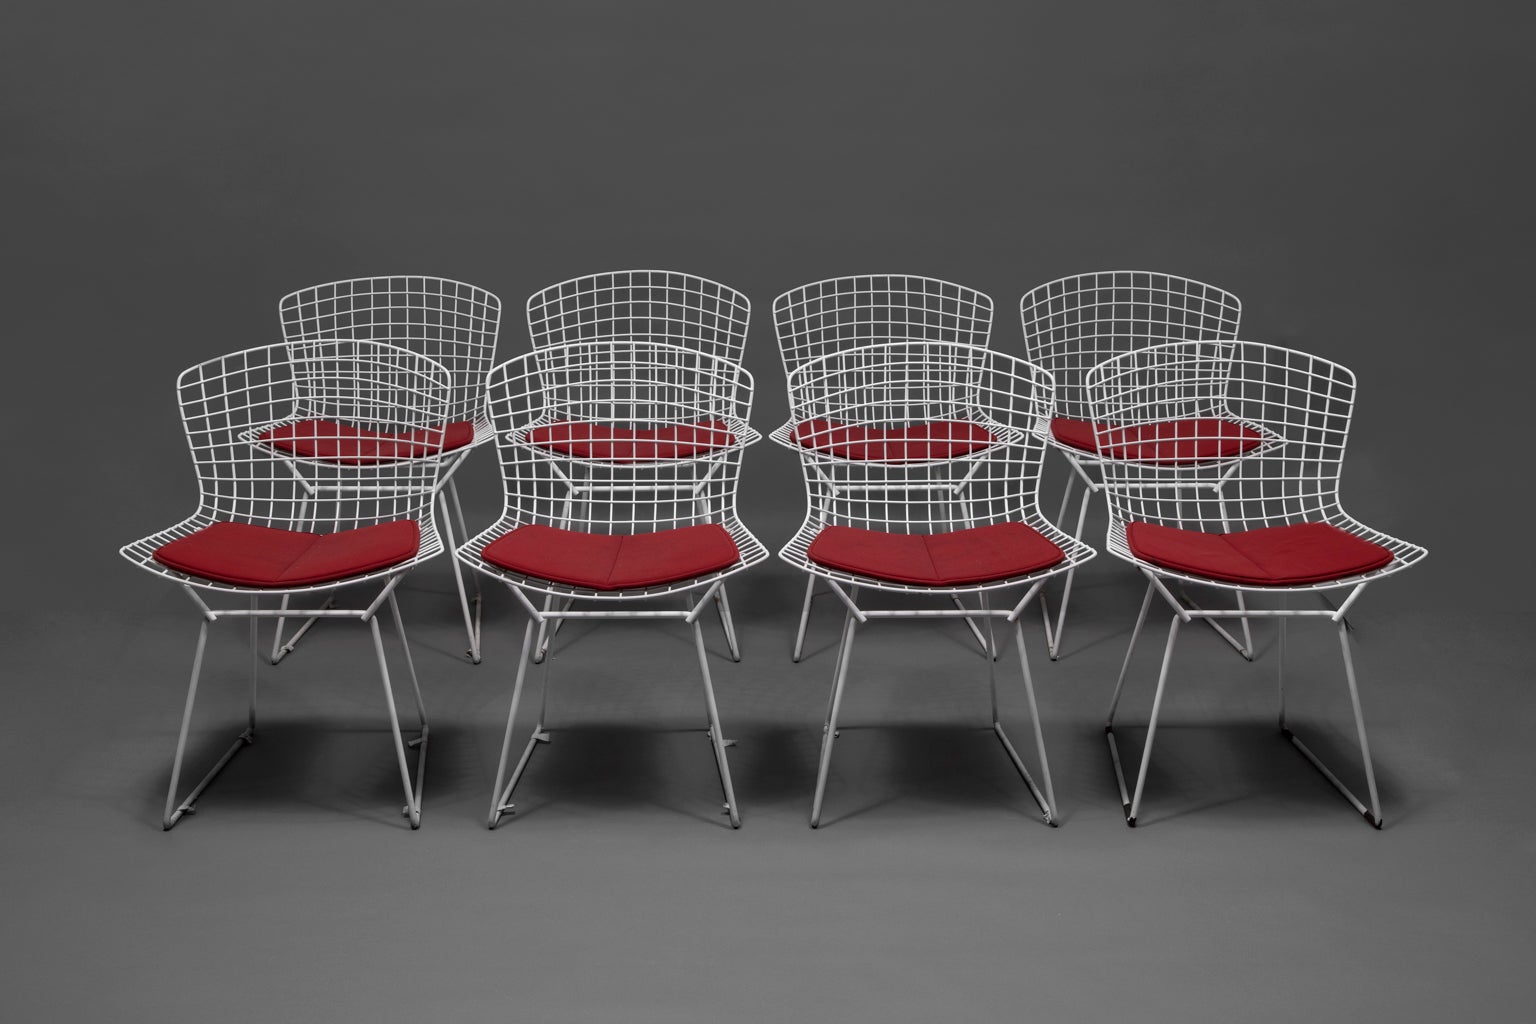 VERKAUF NUR EINE WOCHE

Dieses Set aus acht Beistellstühlen und vier roten Kissen ist so elegant, robust und funktionell wie zu seiner Entstehungszeit. Die Farben sind leuchtend und die Kissen sind in sehr gutem Zustand. Die Stühle verleihen jeder